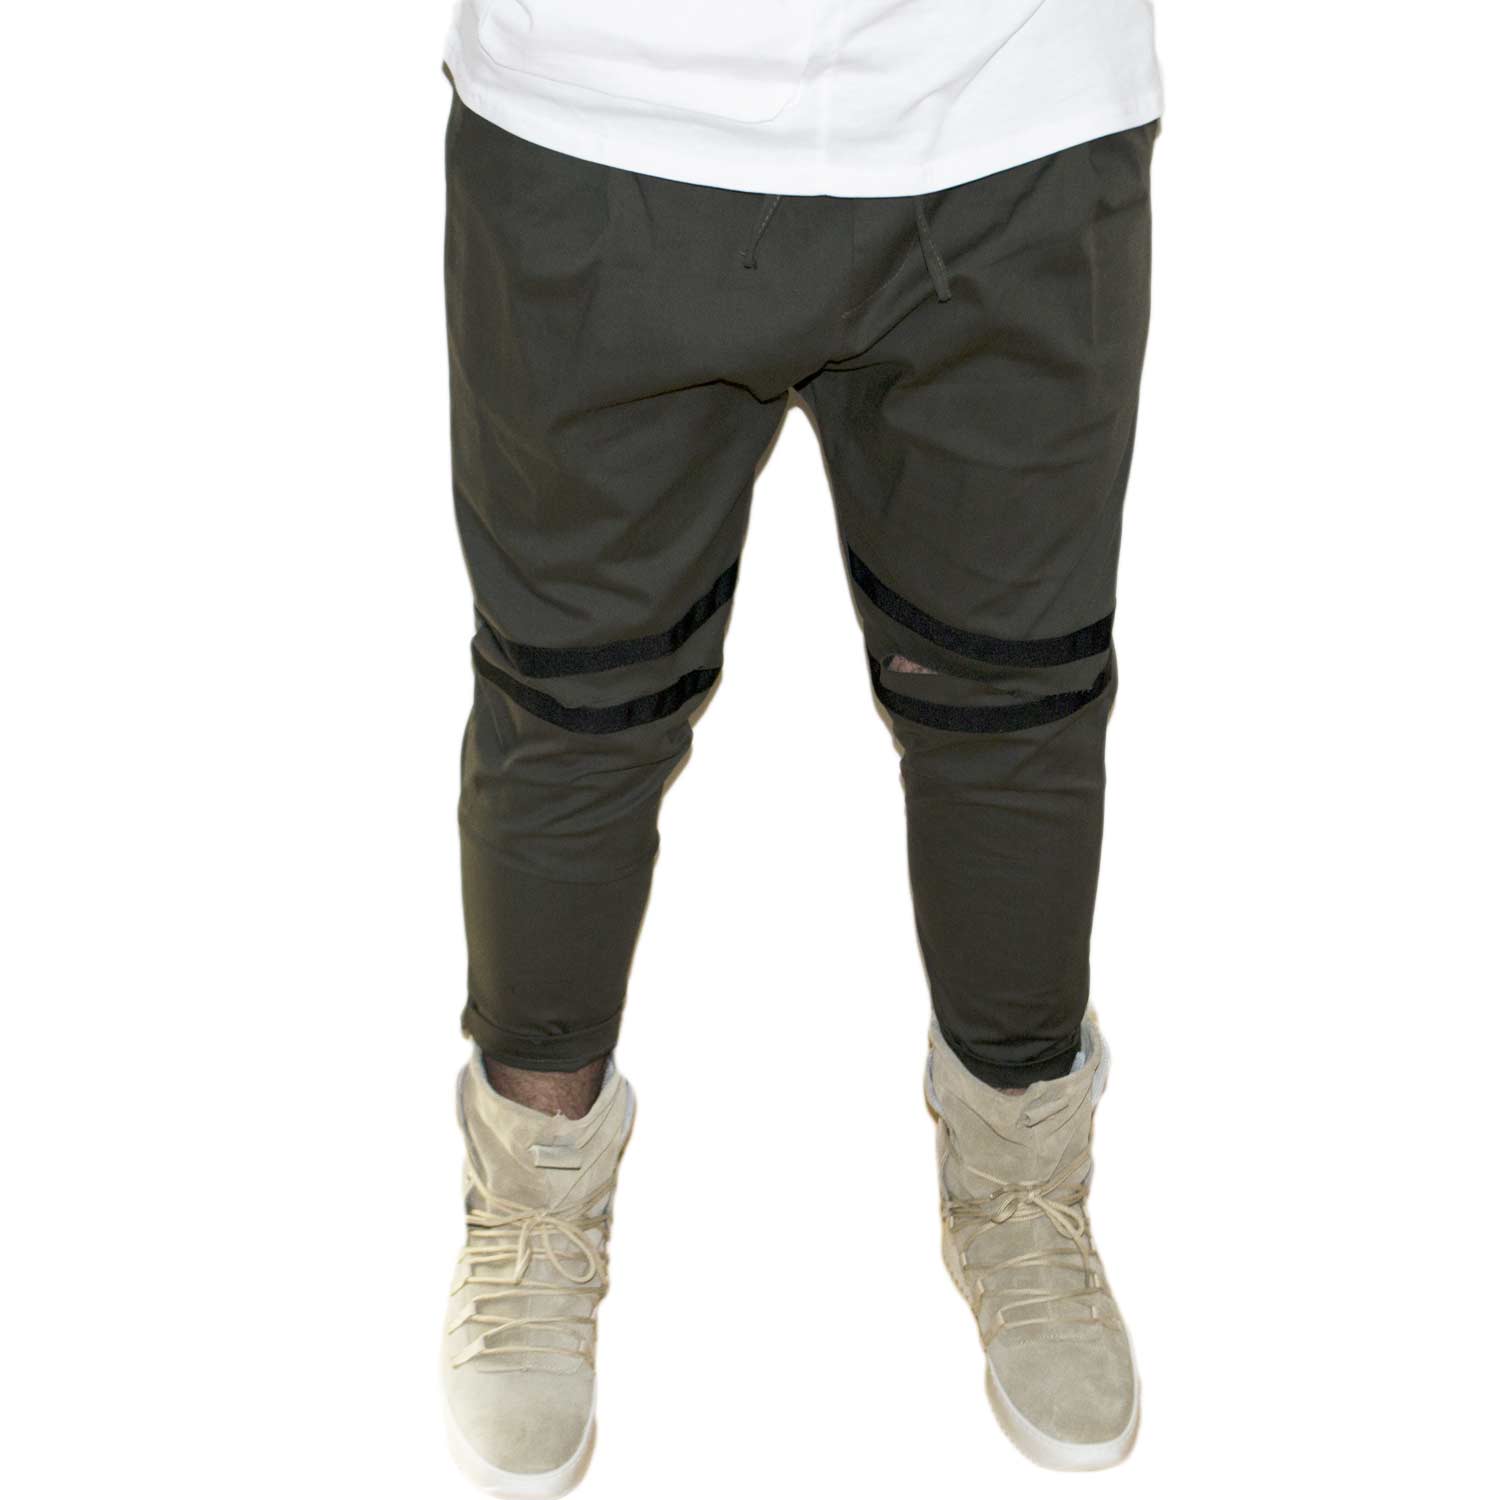 Pantaloni jogger verdi uomo con elastico e coulisse e tasche laterali strappi sul ginocchio striscia nera moda giovane.